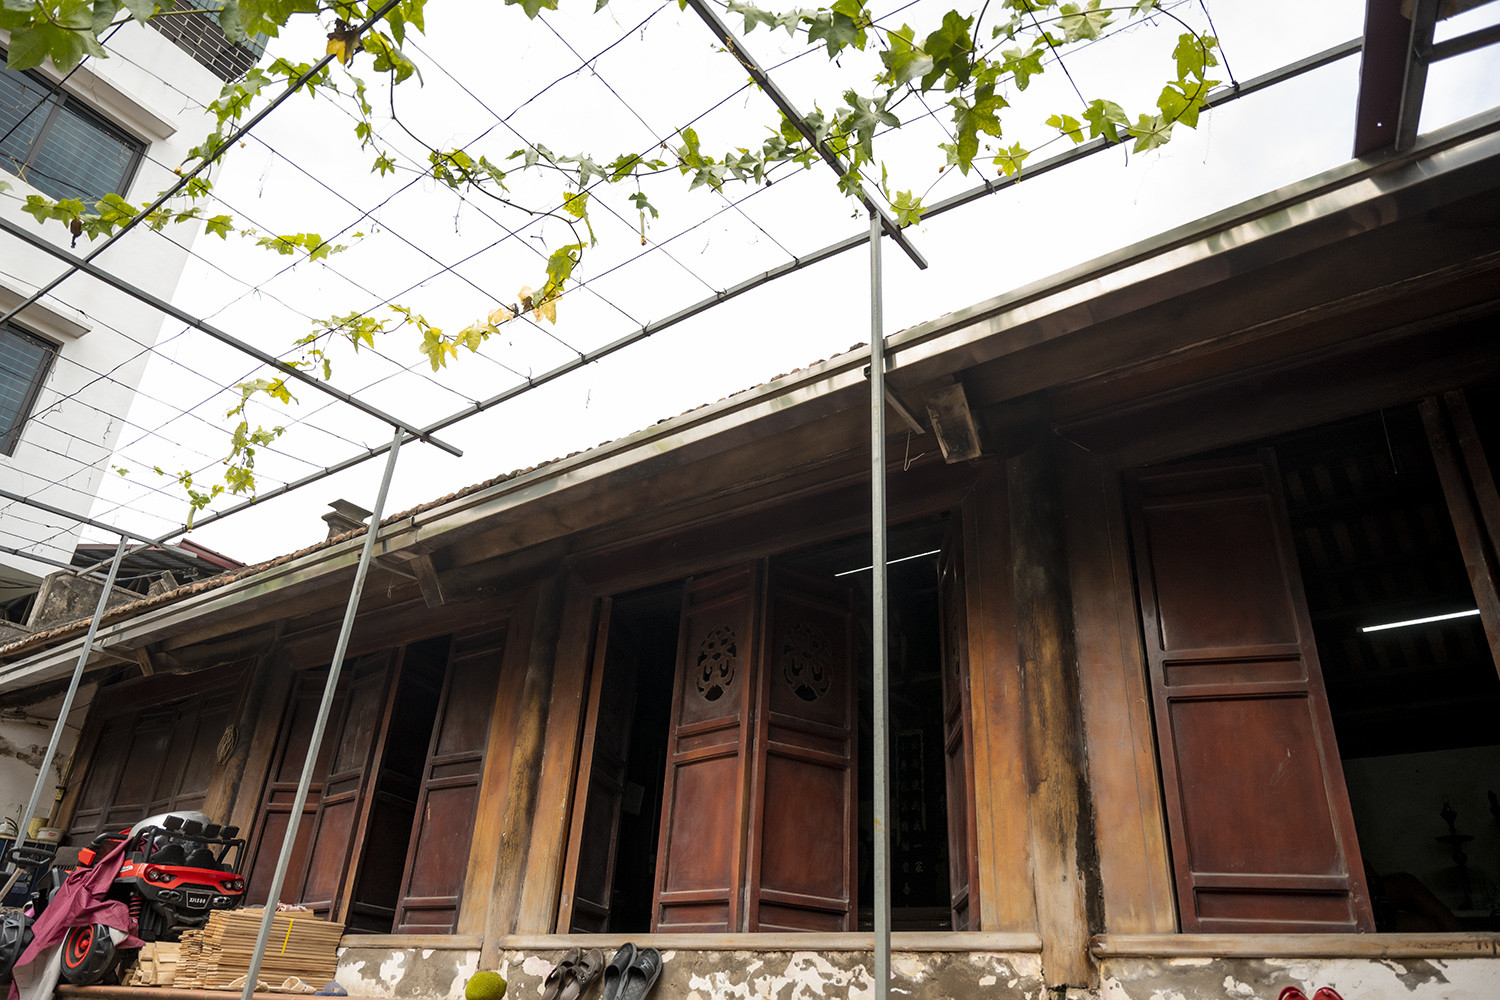 Chủ nhân nhà gỗ lim gần 350 tuổi tiết lộ bí kíp dựng nhà “thần tốc” trong một đêm - 1